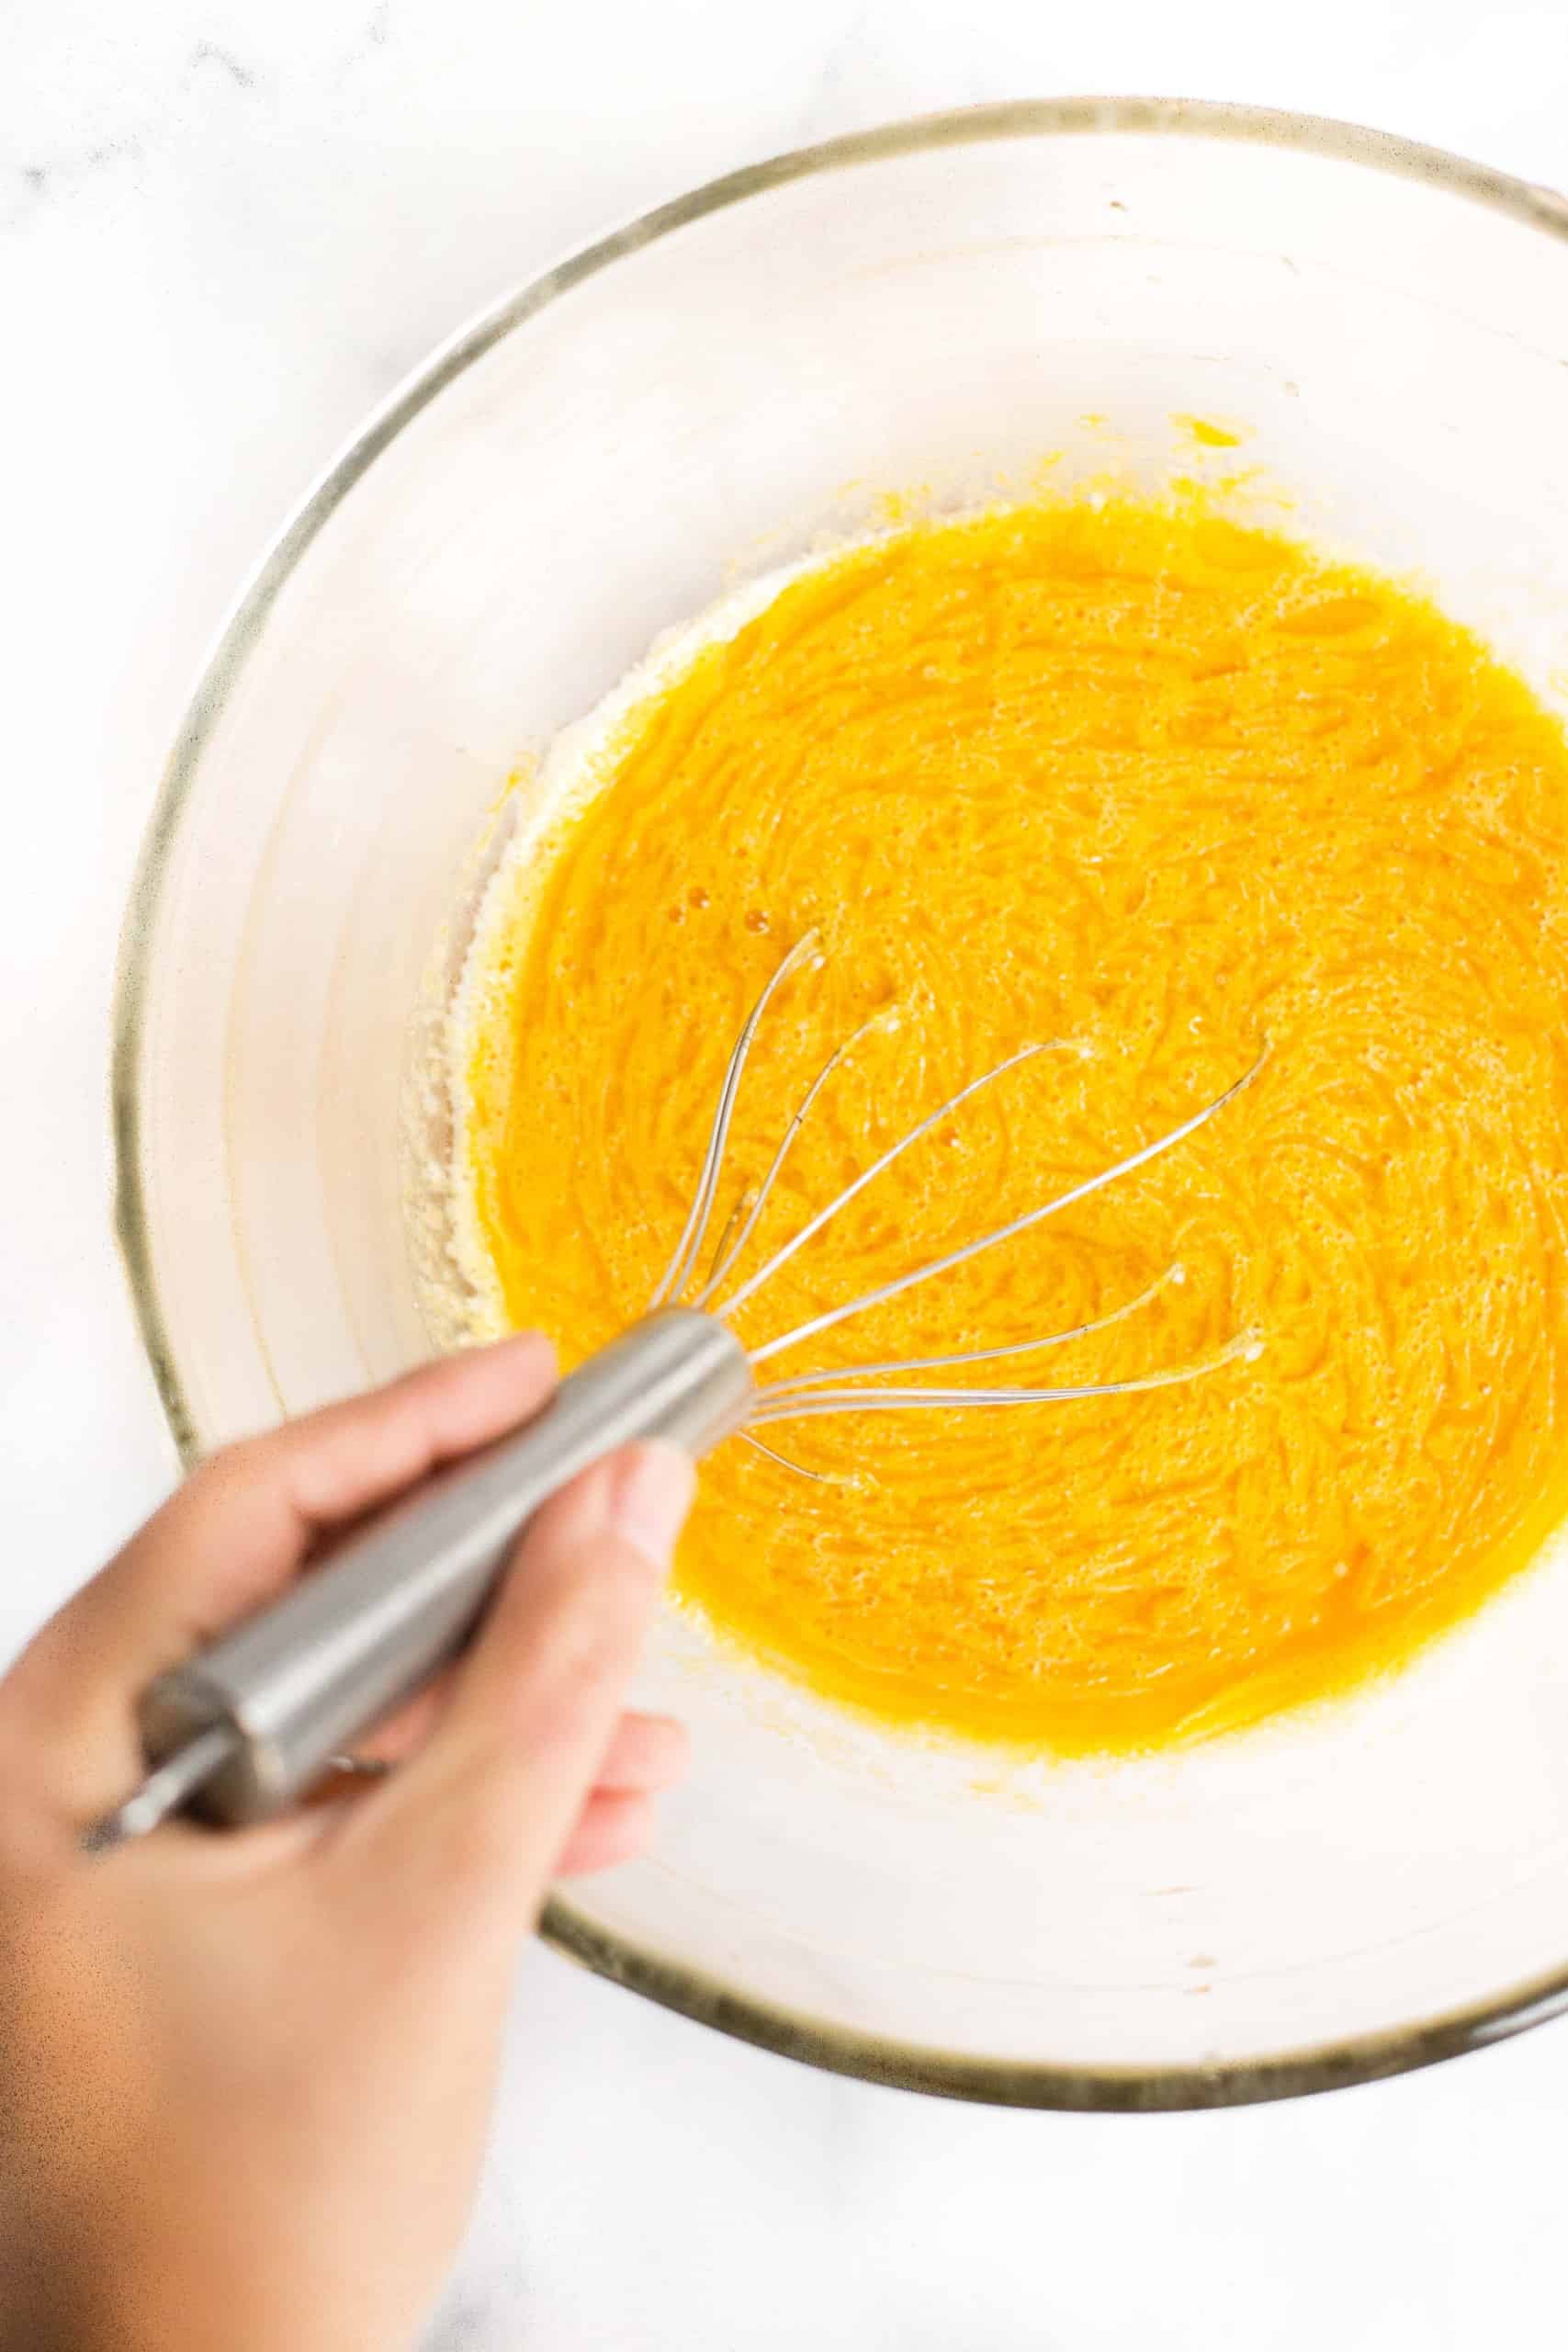 Whisking yellow orange liquid in glass bowl.